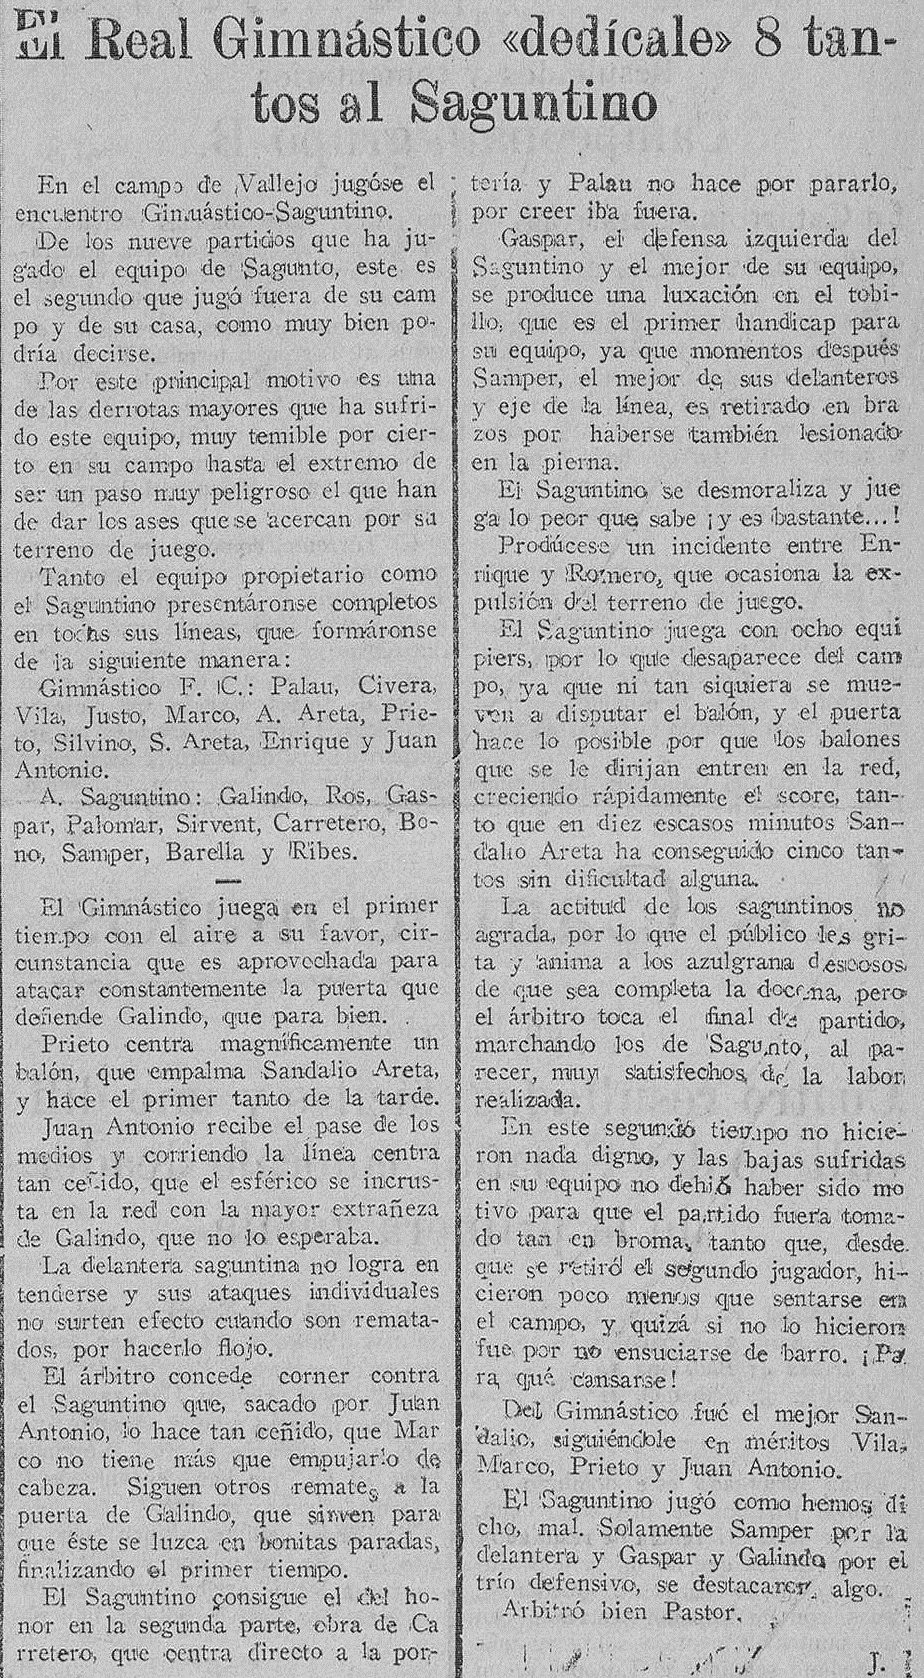 1927.11.20 (20 ноября 1927), Гимнастико - Атлетик Сагунтино, 8-1.png